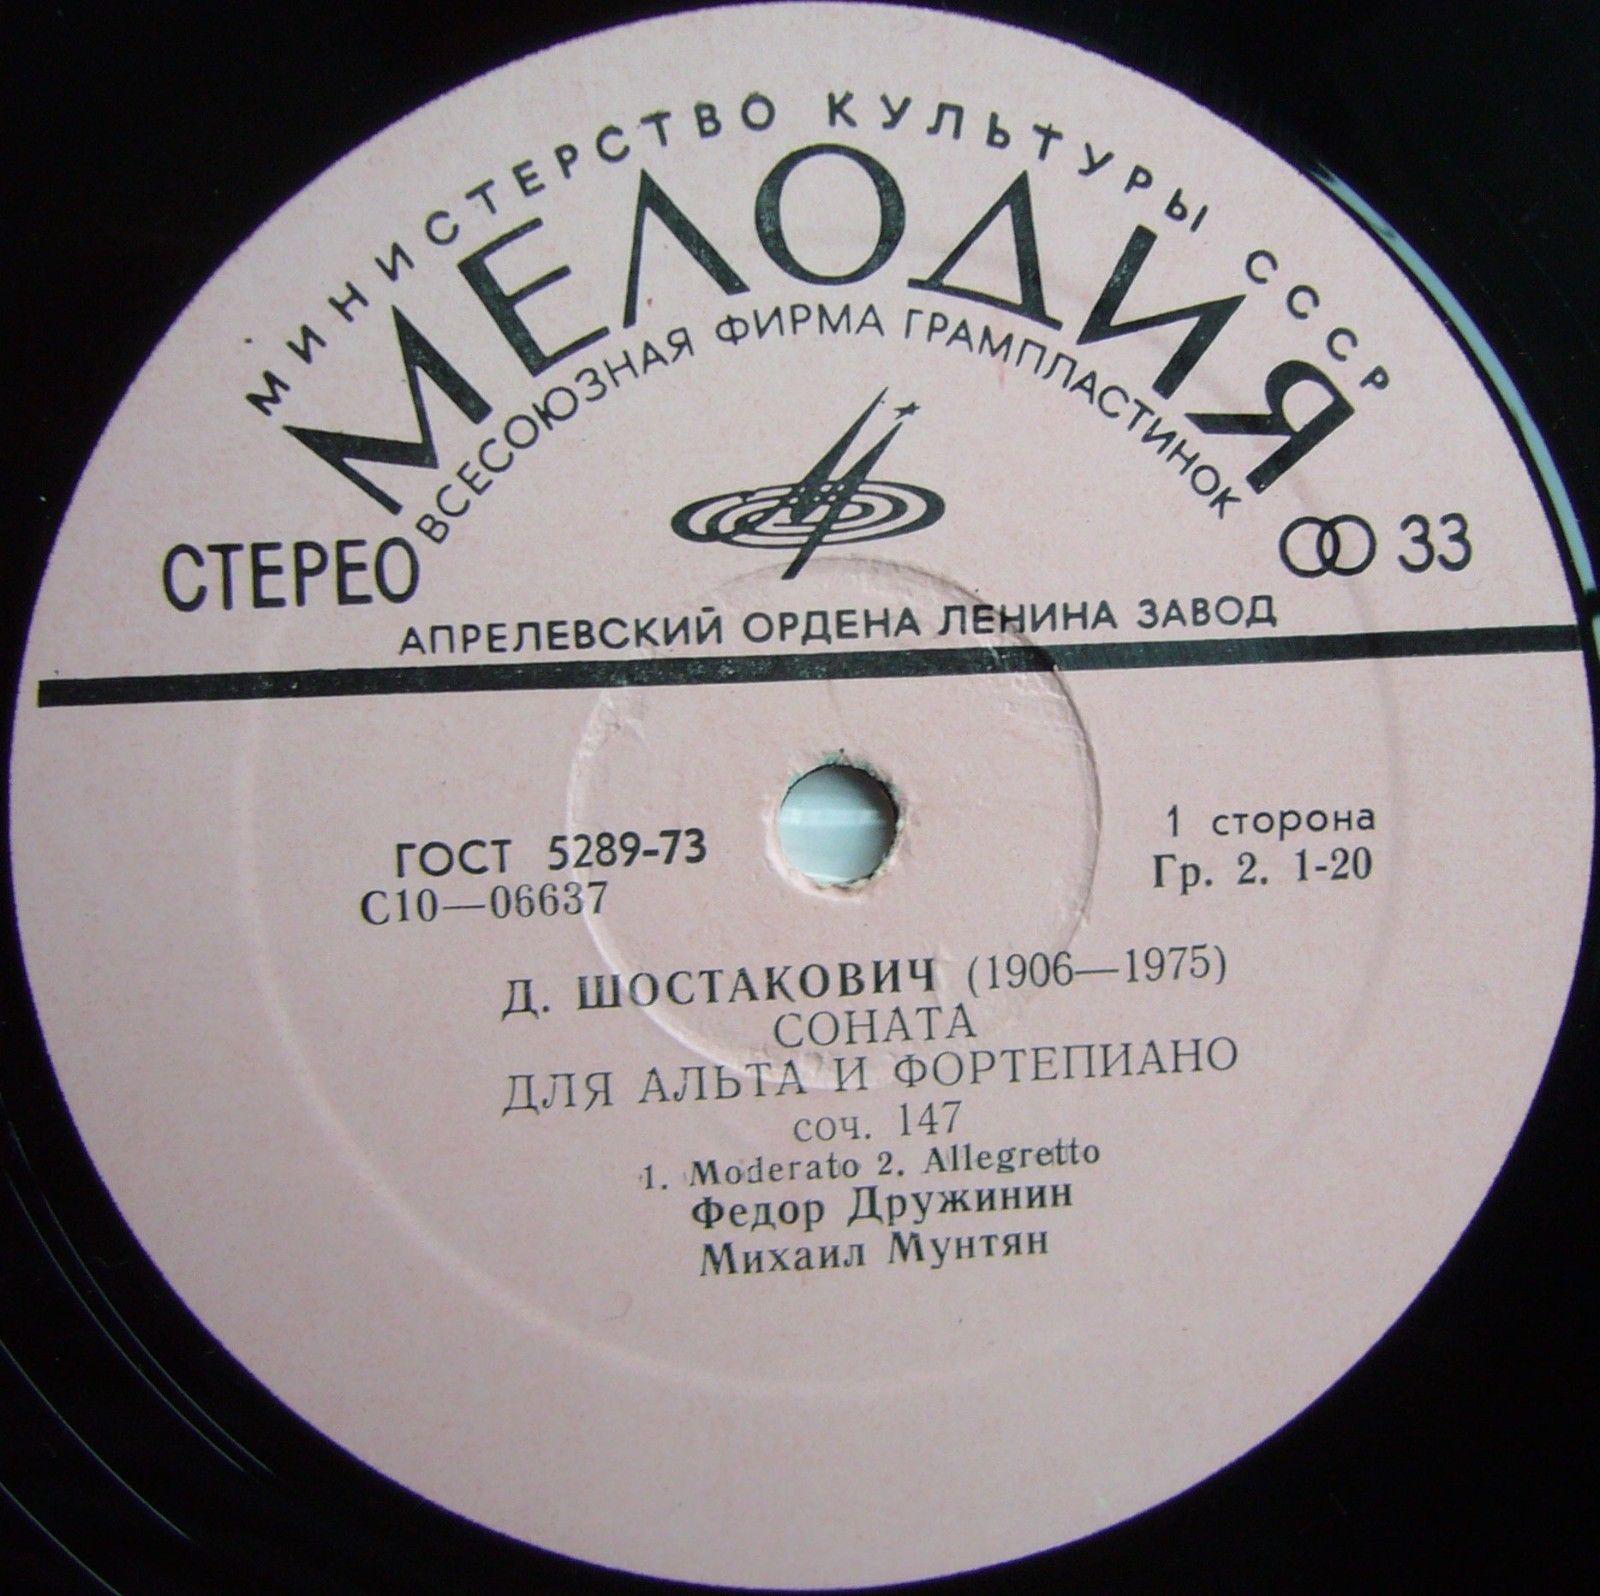 Д. ШОСТАКОВИЧ (1906-1975): Соната для альта и фортепиано, соч. 147